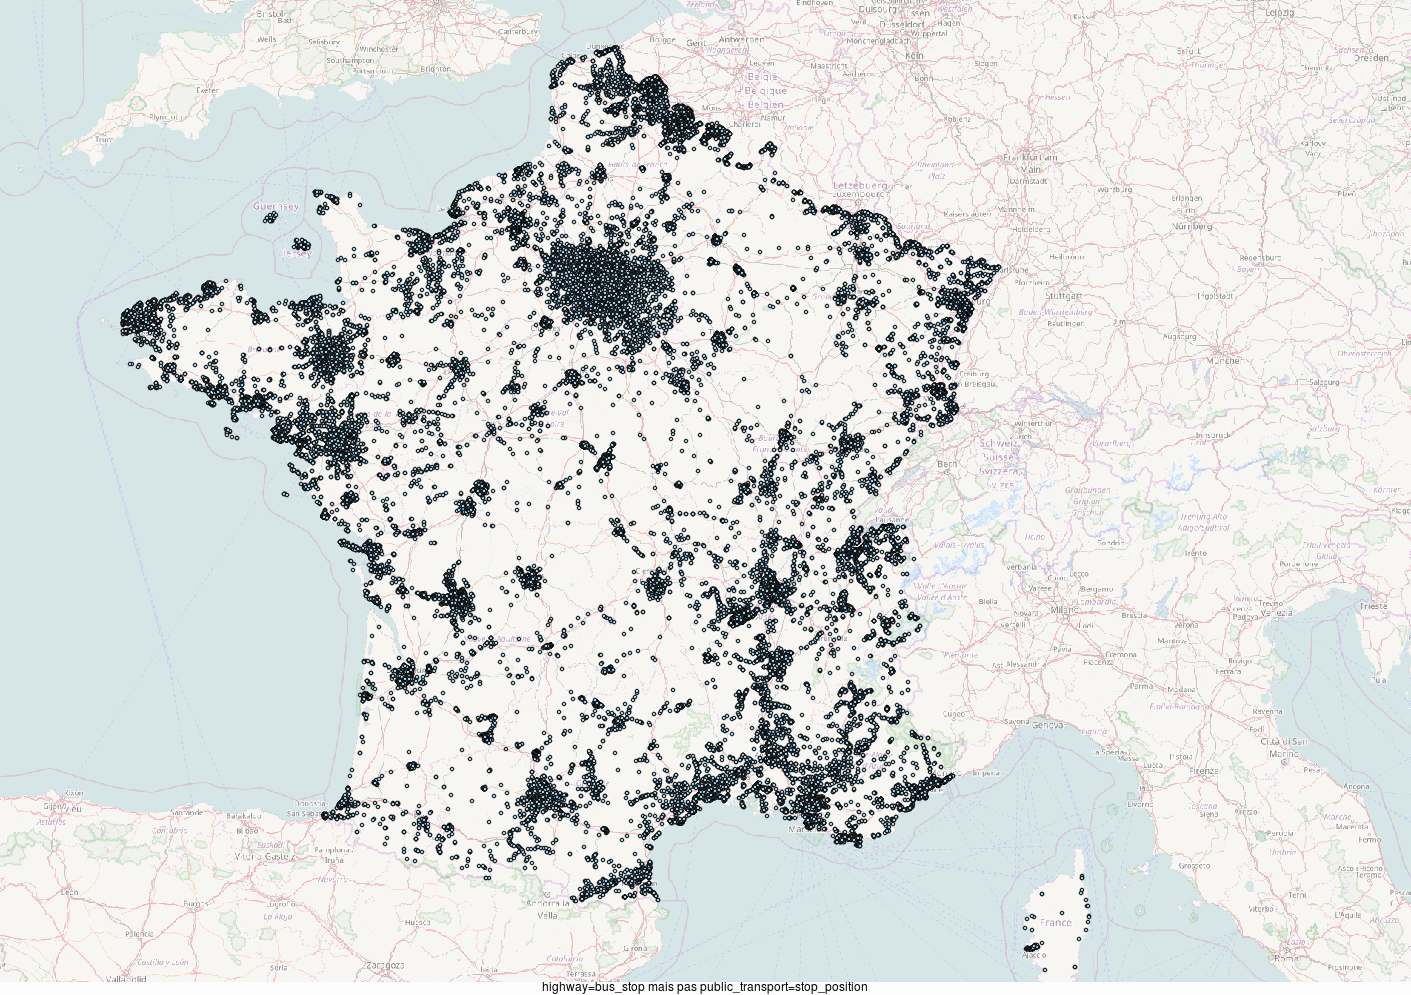 corrélation entre la cartographie du tag public_transport = platform et le vote Macron aux législatives. Nan je déconne